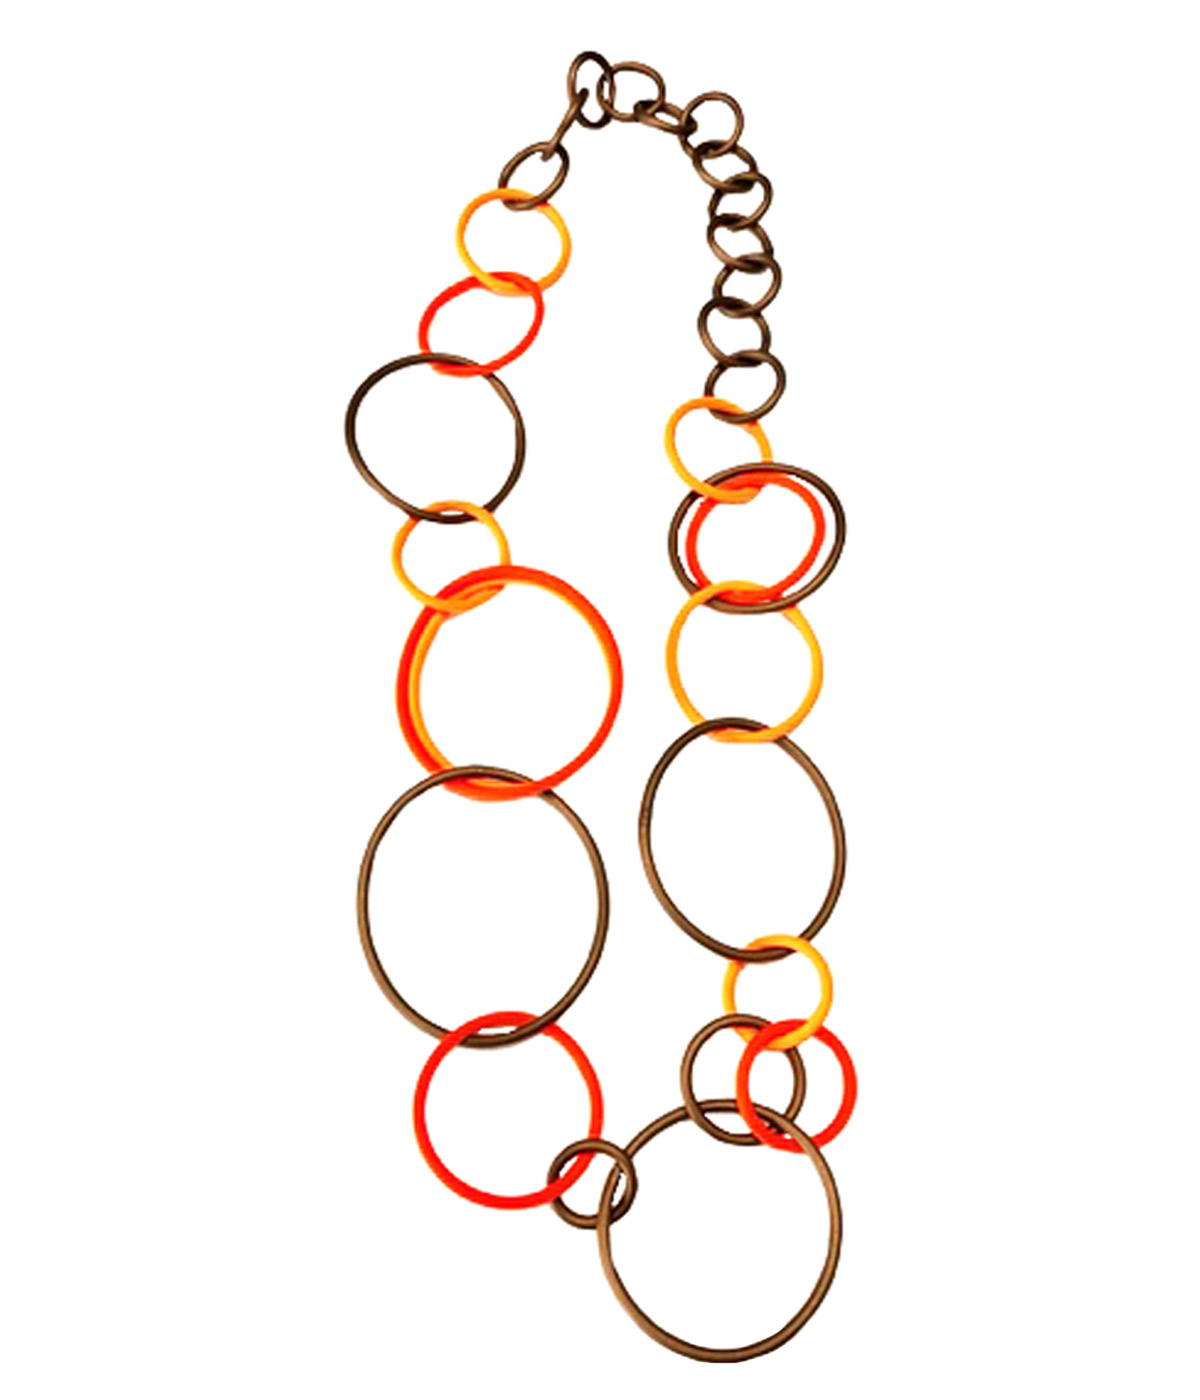 Aventurine, bijoux de créateurs, bijoux originaux, bijoux colorés, collier Sidonie Orange de Samuel Coraux